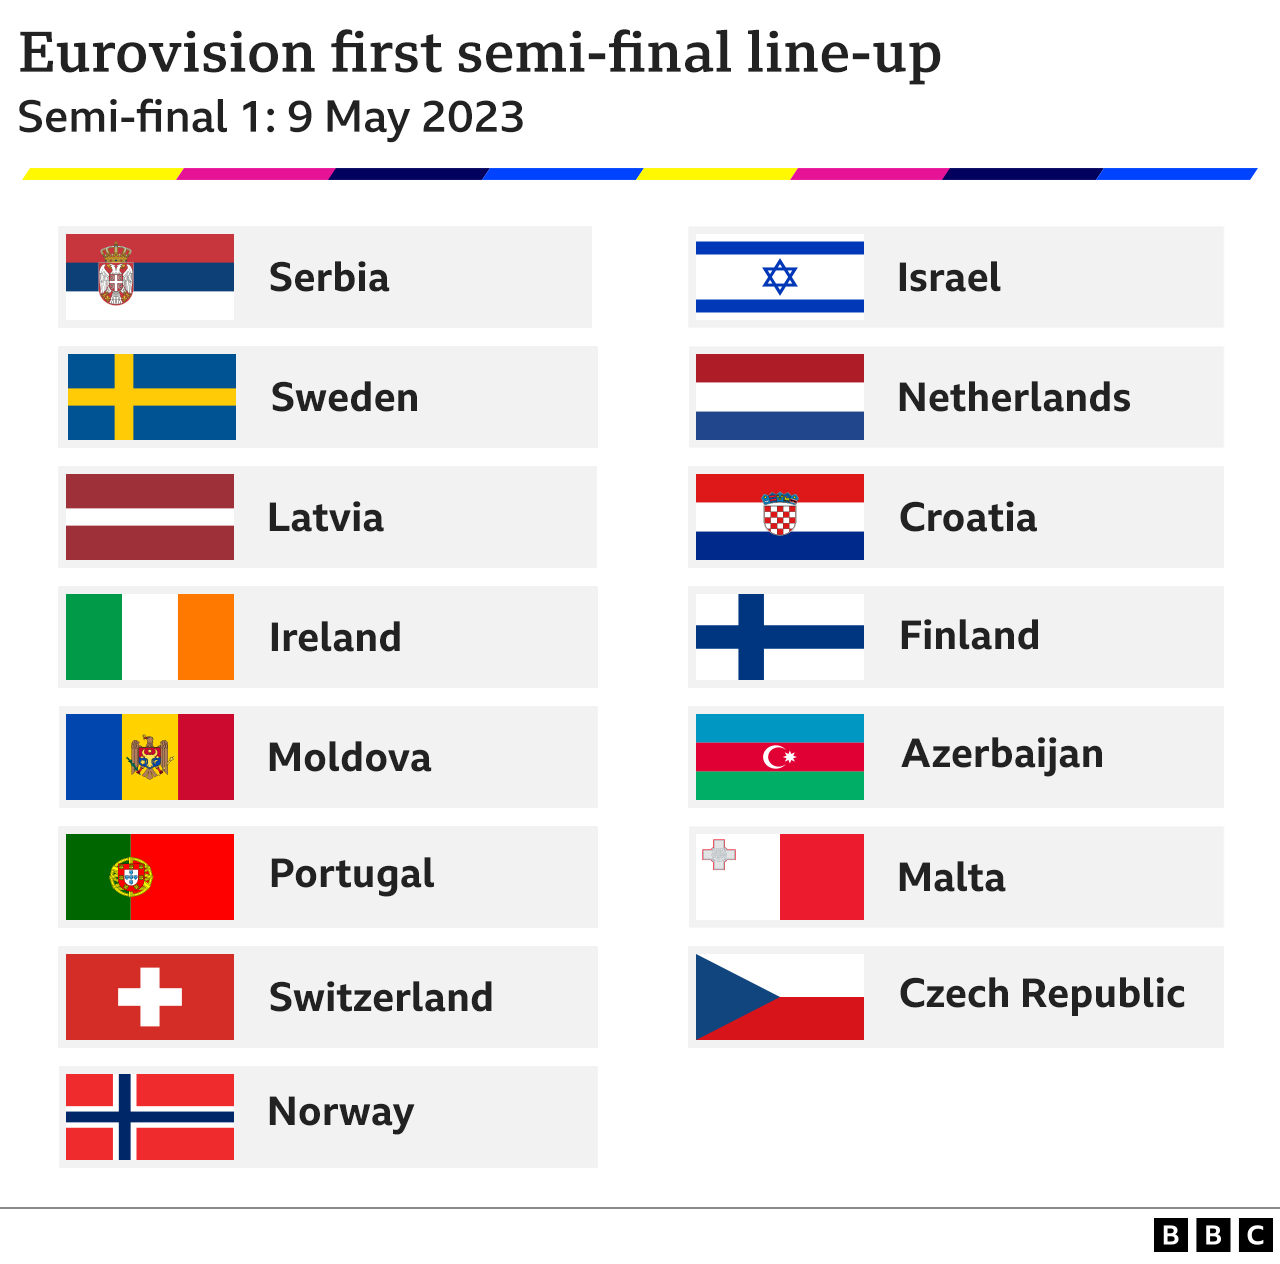 Таблица, показывающая состав стран, принимающих участие в первом полуфинале Евровидения 2023 9 мая 2023 года. Страны: Азербайджан, Хорватия, Чехия, Финляндия, Ирландия, Израиль, Латвия, Мальта, Молдова, Нидерланды, Норвегия, Португалия, Сербия, Швеция и Швейцария.